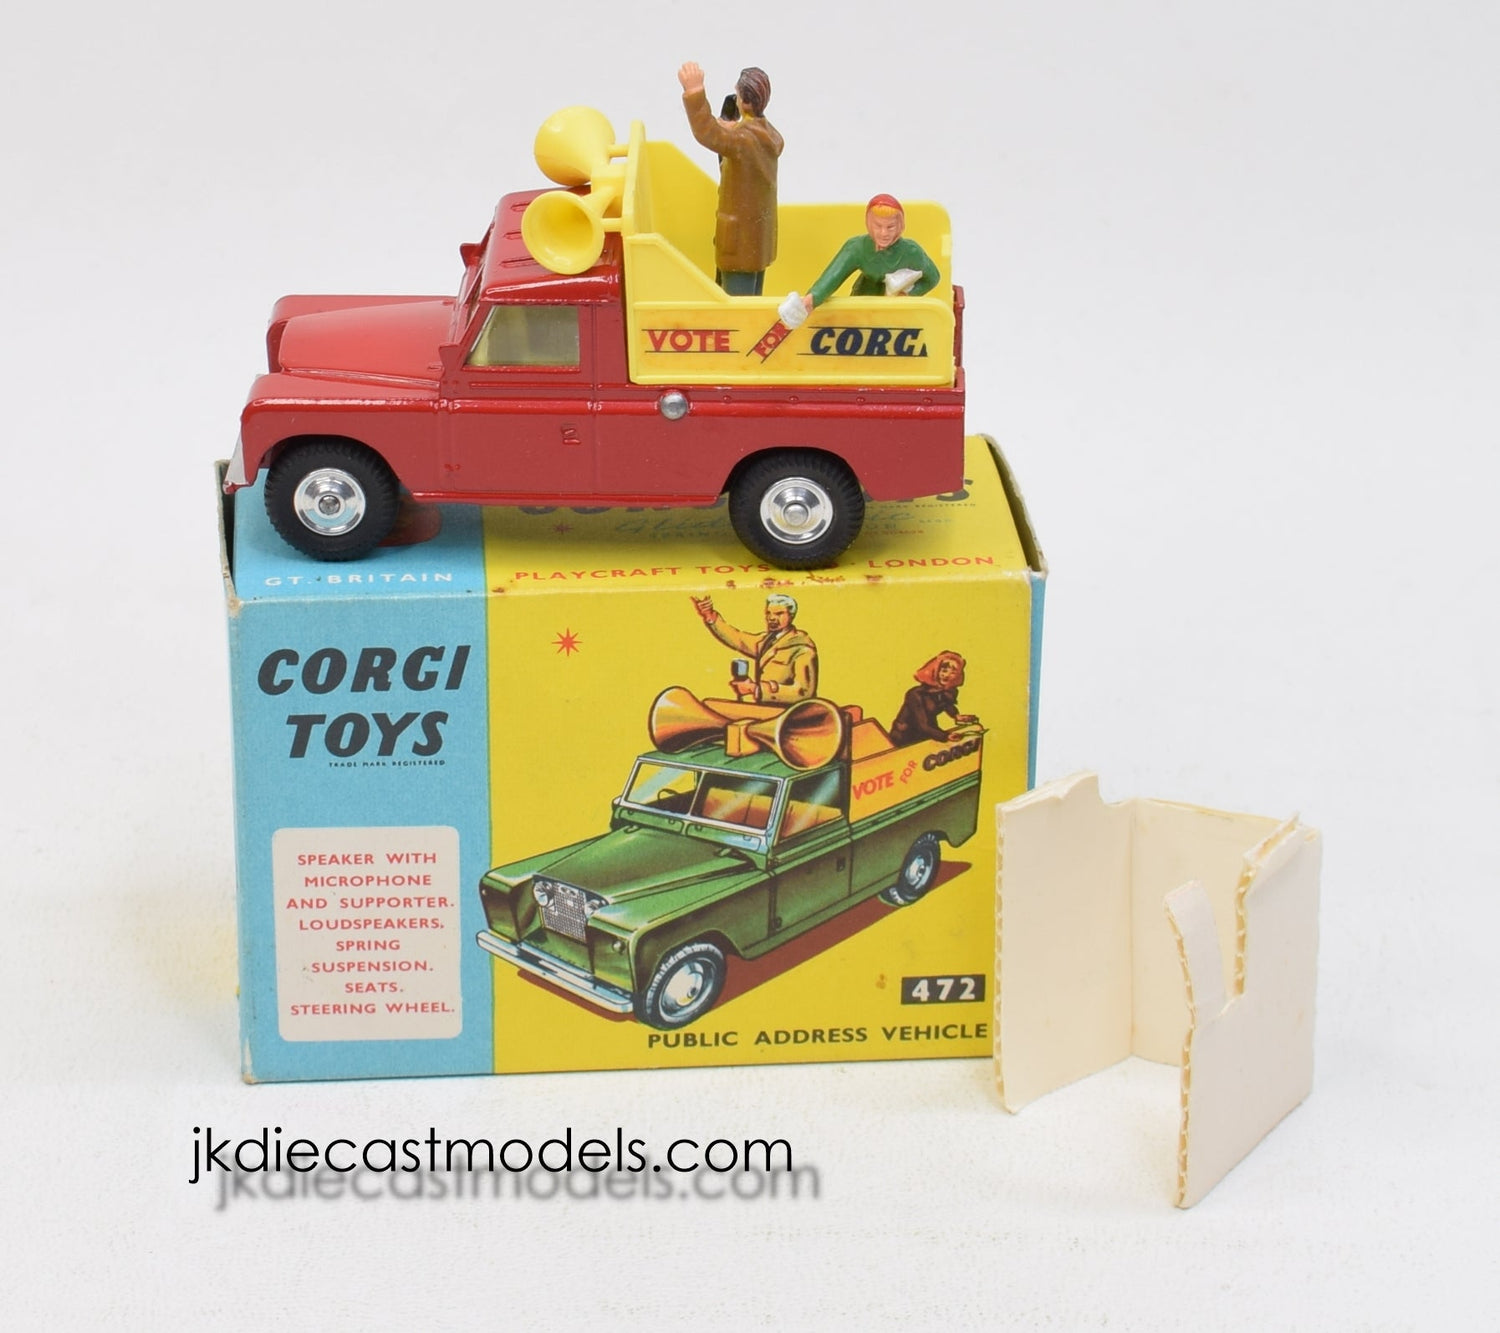 Corgi Toys 472 Public Address Vehicle 